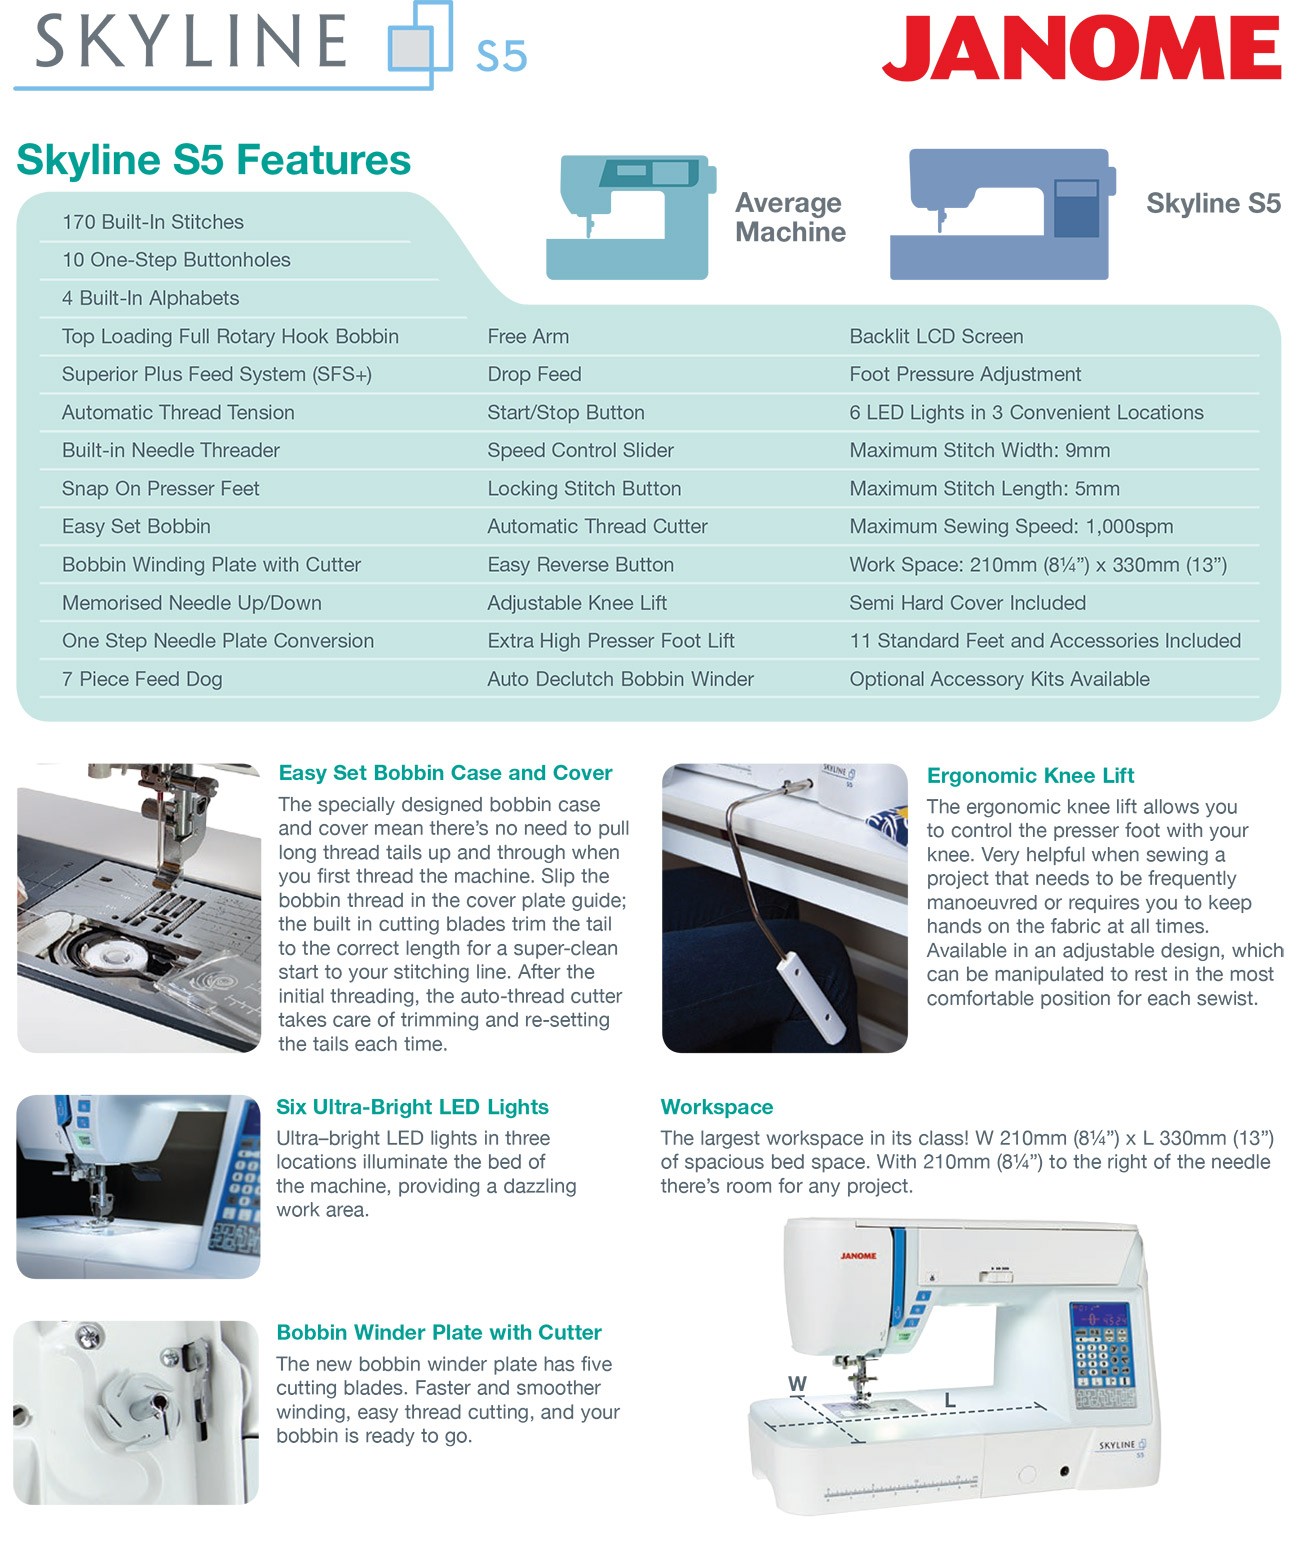 Janome-Skyline_S5_Brochure-2.jpg